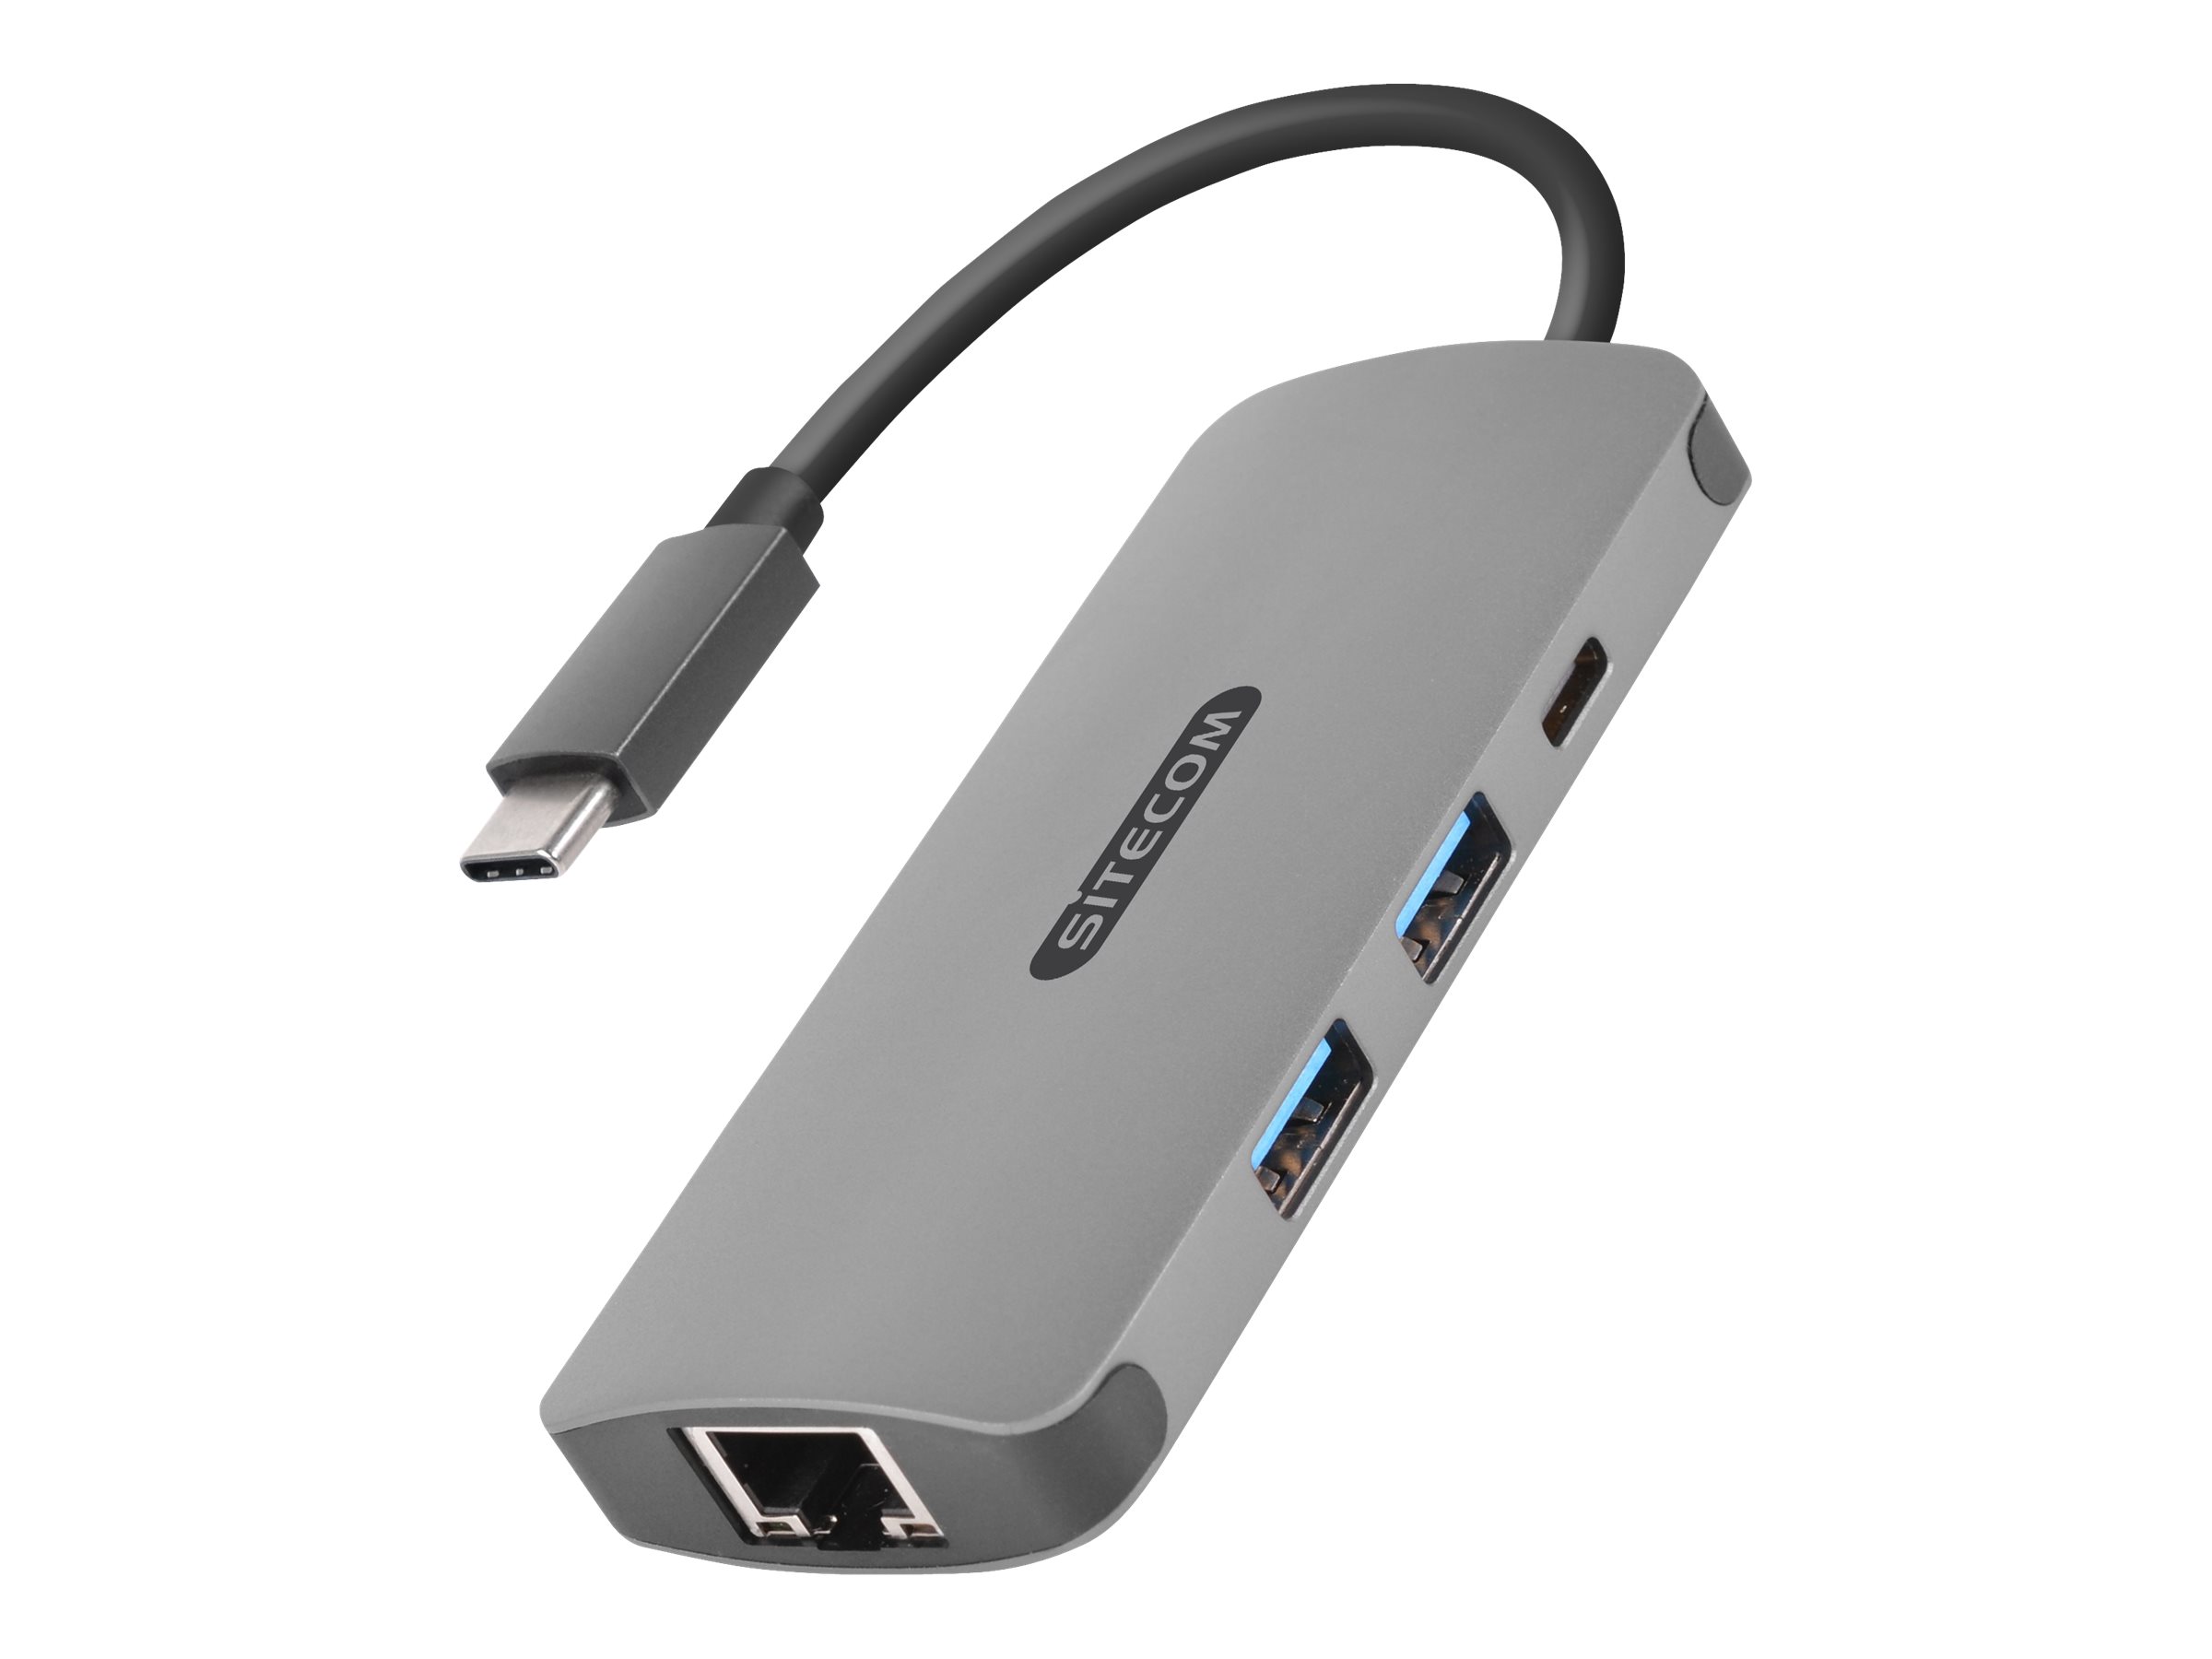 Sitecom CN-378 - Netzwerkadapter - USB-C - Gigabit Ethernet x 1 + USB 3.0 x 2 + USB-C 3.1 x 1